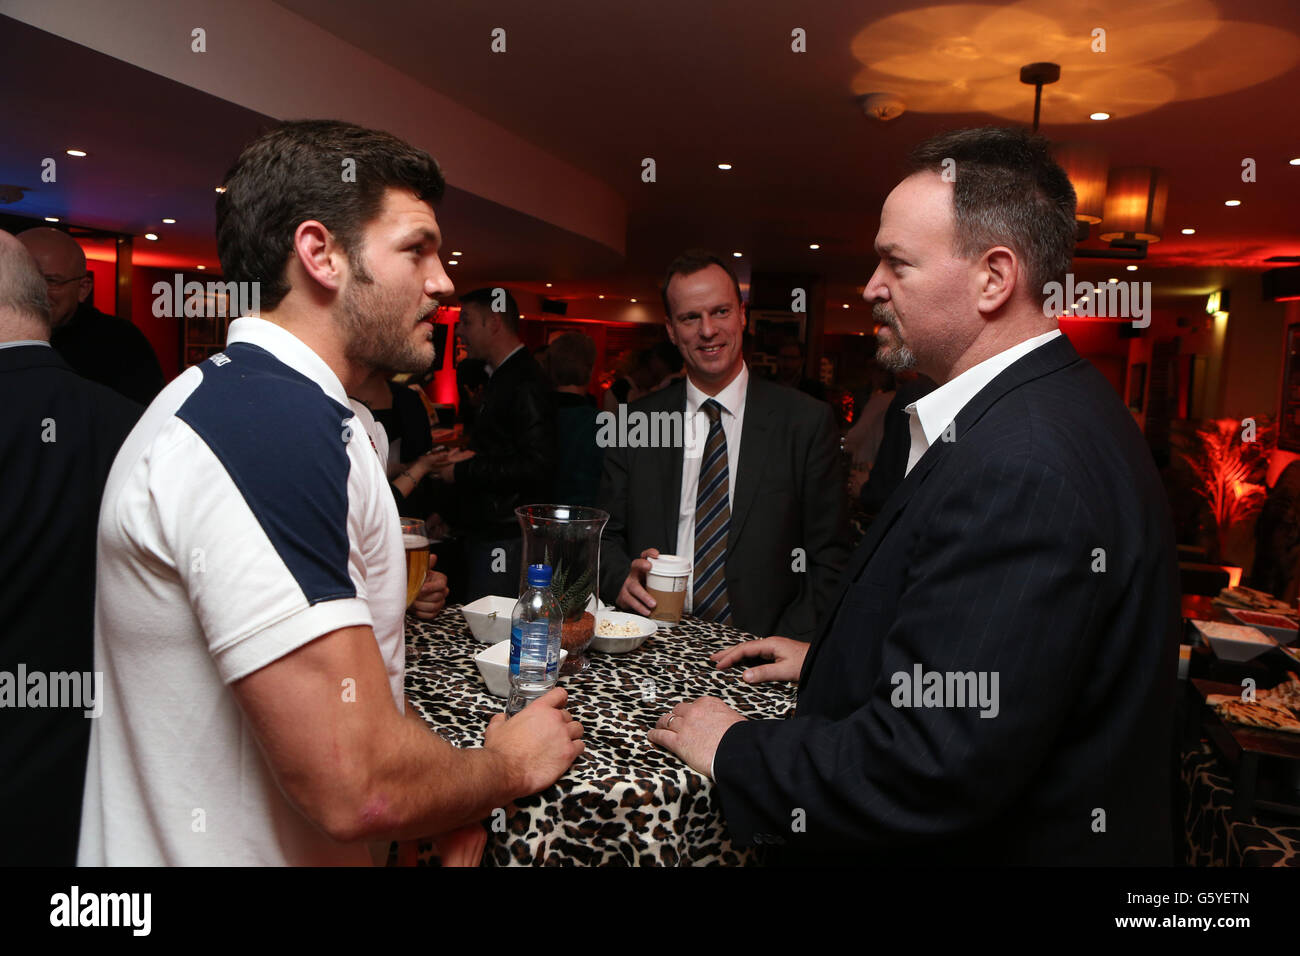 England Rugby Union der Sevens-Spieler Jeff Williams spricht mit einem Gast In der neuen Sevens Bar im Marriott Hotel in der Nähe Flughafen Heathrow Stockfoto